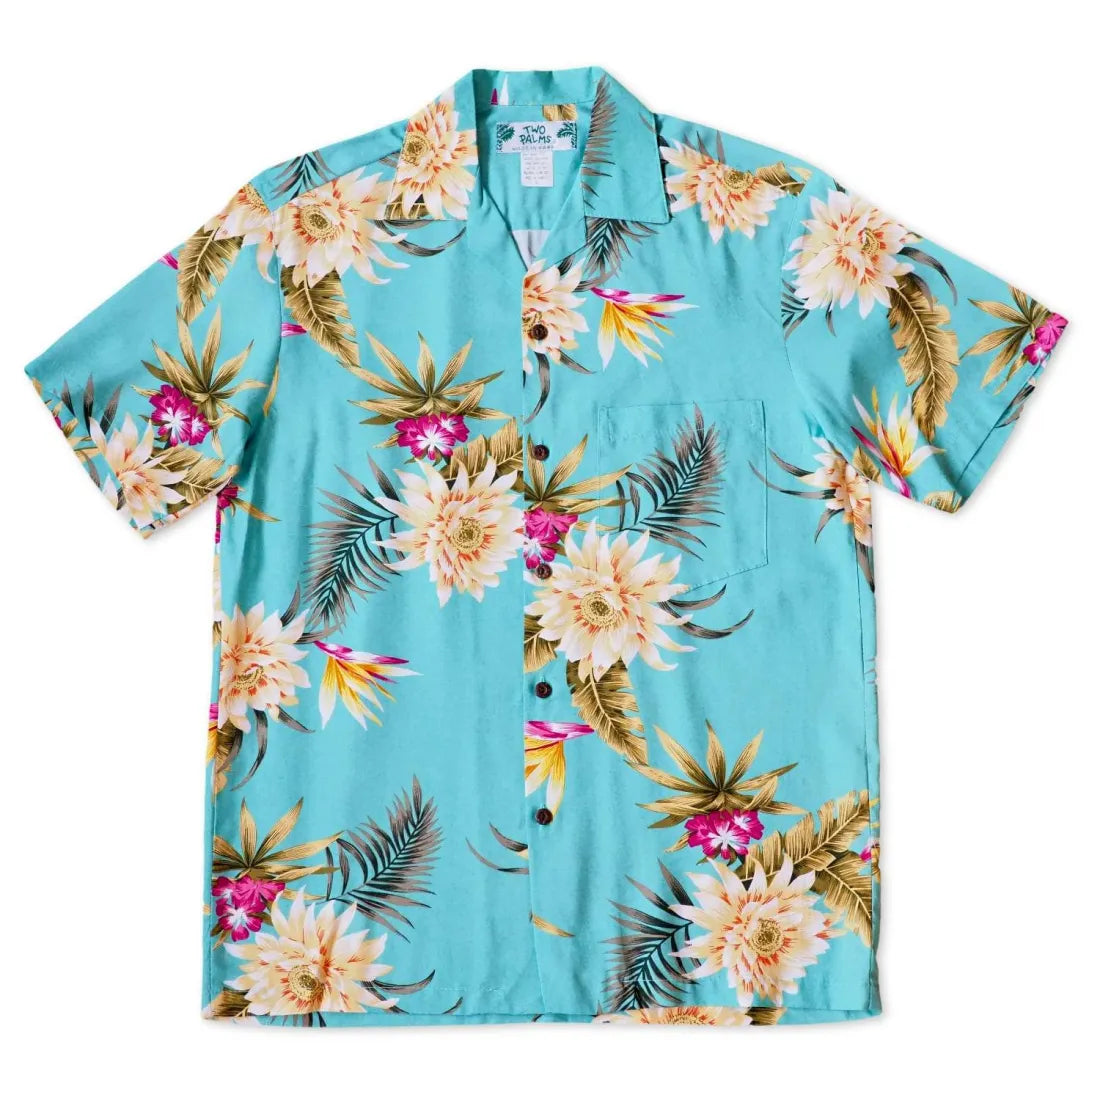 Mountain Green Hawaiian Rayon Shirt - Made In Hawaii